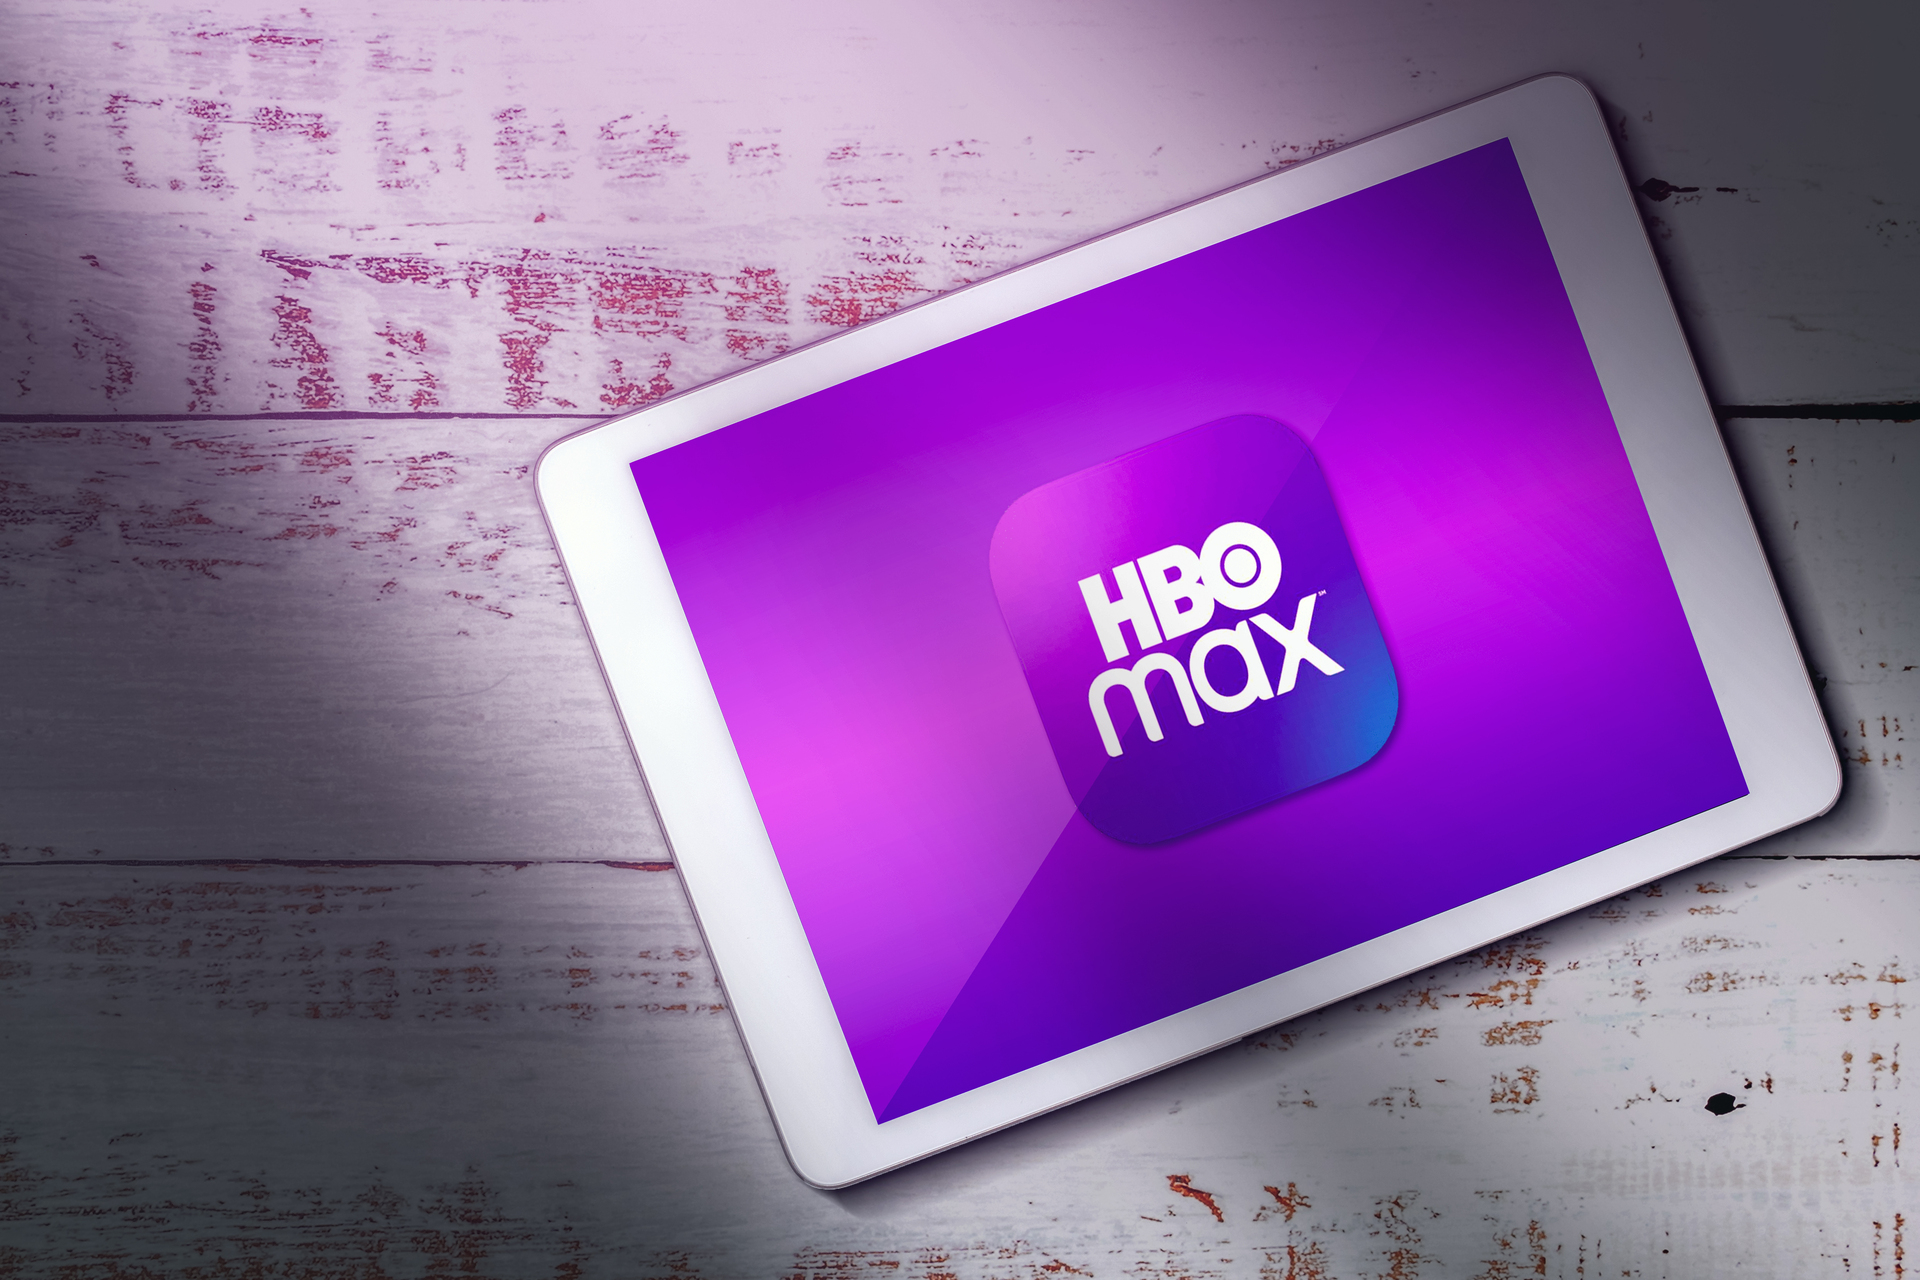 Na obrázku je zobrazený tablet alebo digitálne zariadenie so žiarivou fialovou obrazovkou, na ktorej je nápadne zobrazené logo „HBO Max“. Tableta spočíva na drevenom povrchu so starým alebo ošúchaným vzhľadom, ktorý má biely povrch s presvitajúcimi škvrnami s červeno-ružovými podtónmi. Celkové osvetlenie dodáva obrazu jemnú a náladovú atmosféru